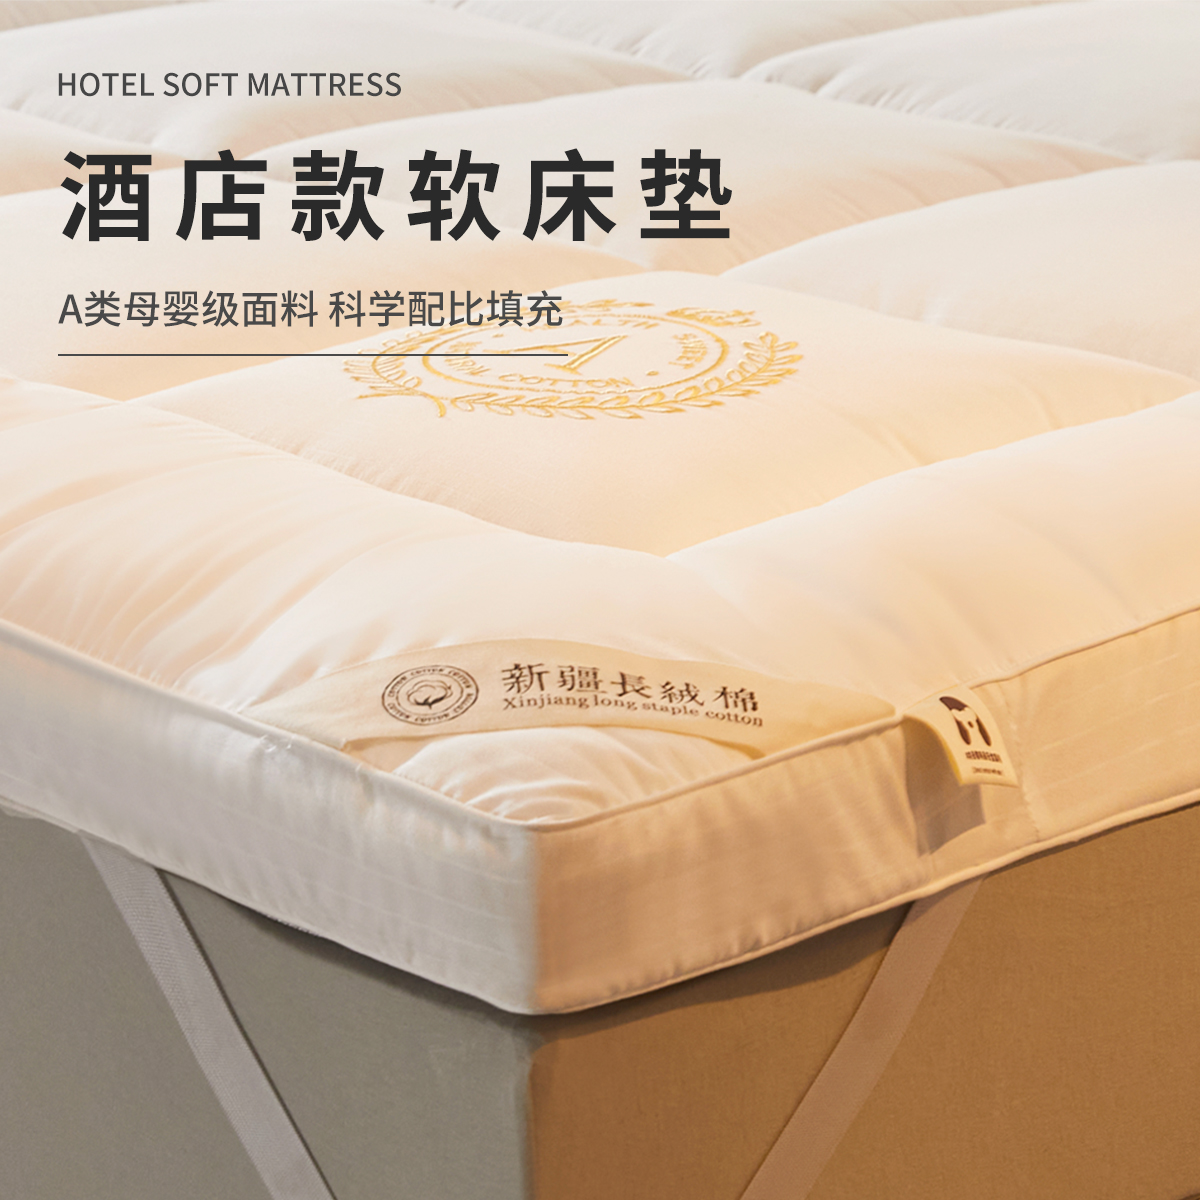 ホテルマットレスソフトクッションホームベッドルームマットキルト 1.5 メートル寝具ベッド畳スーパーソフト肥厚マット